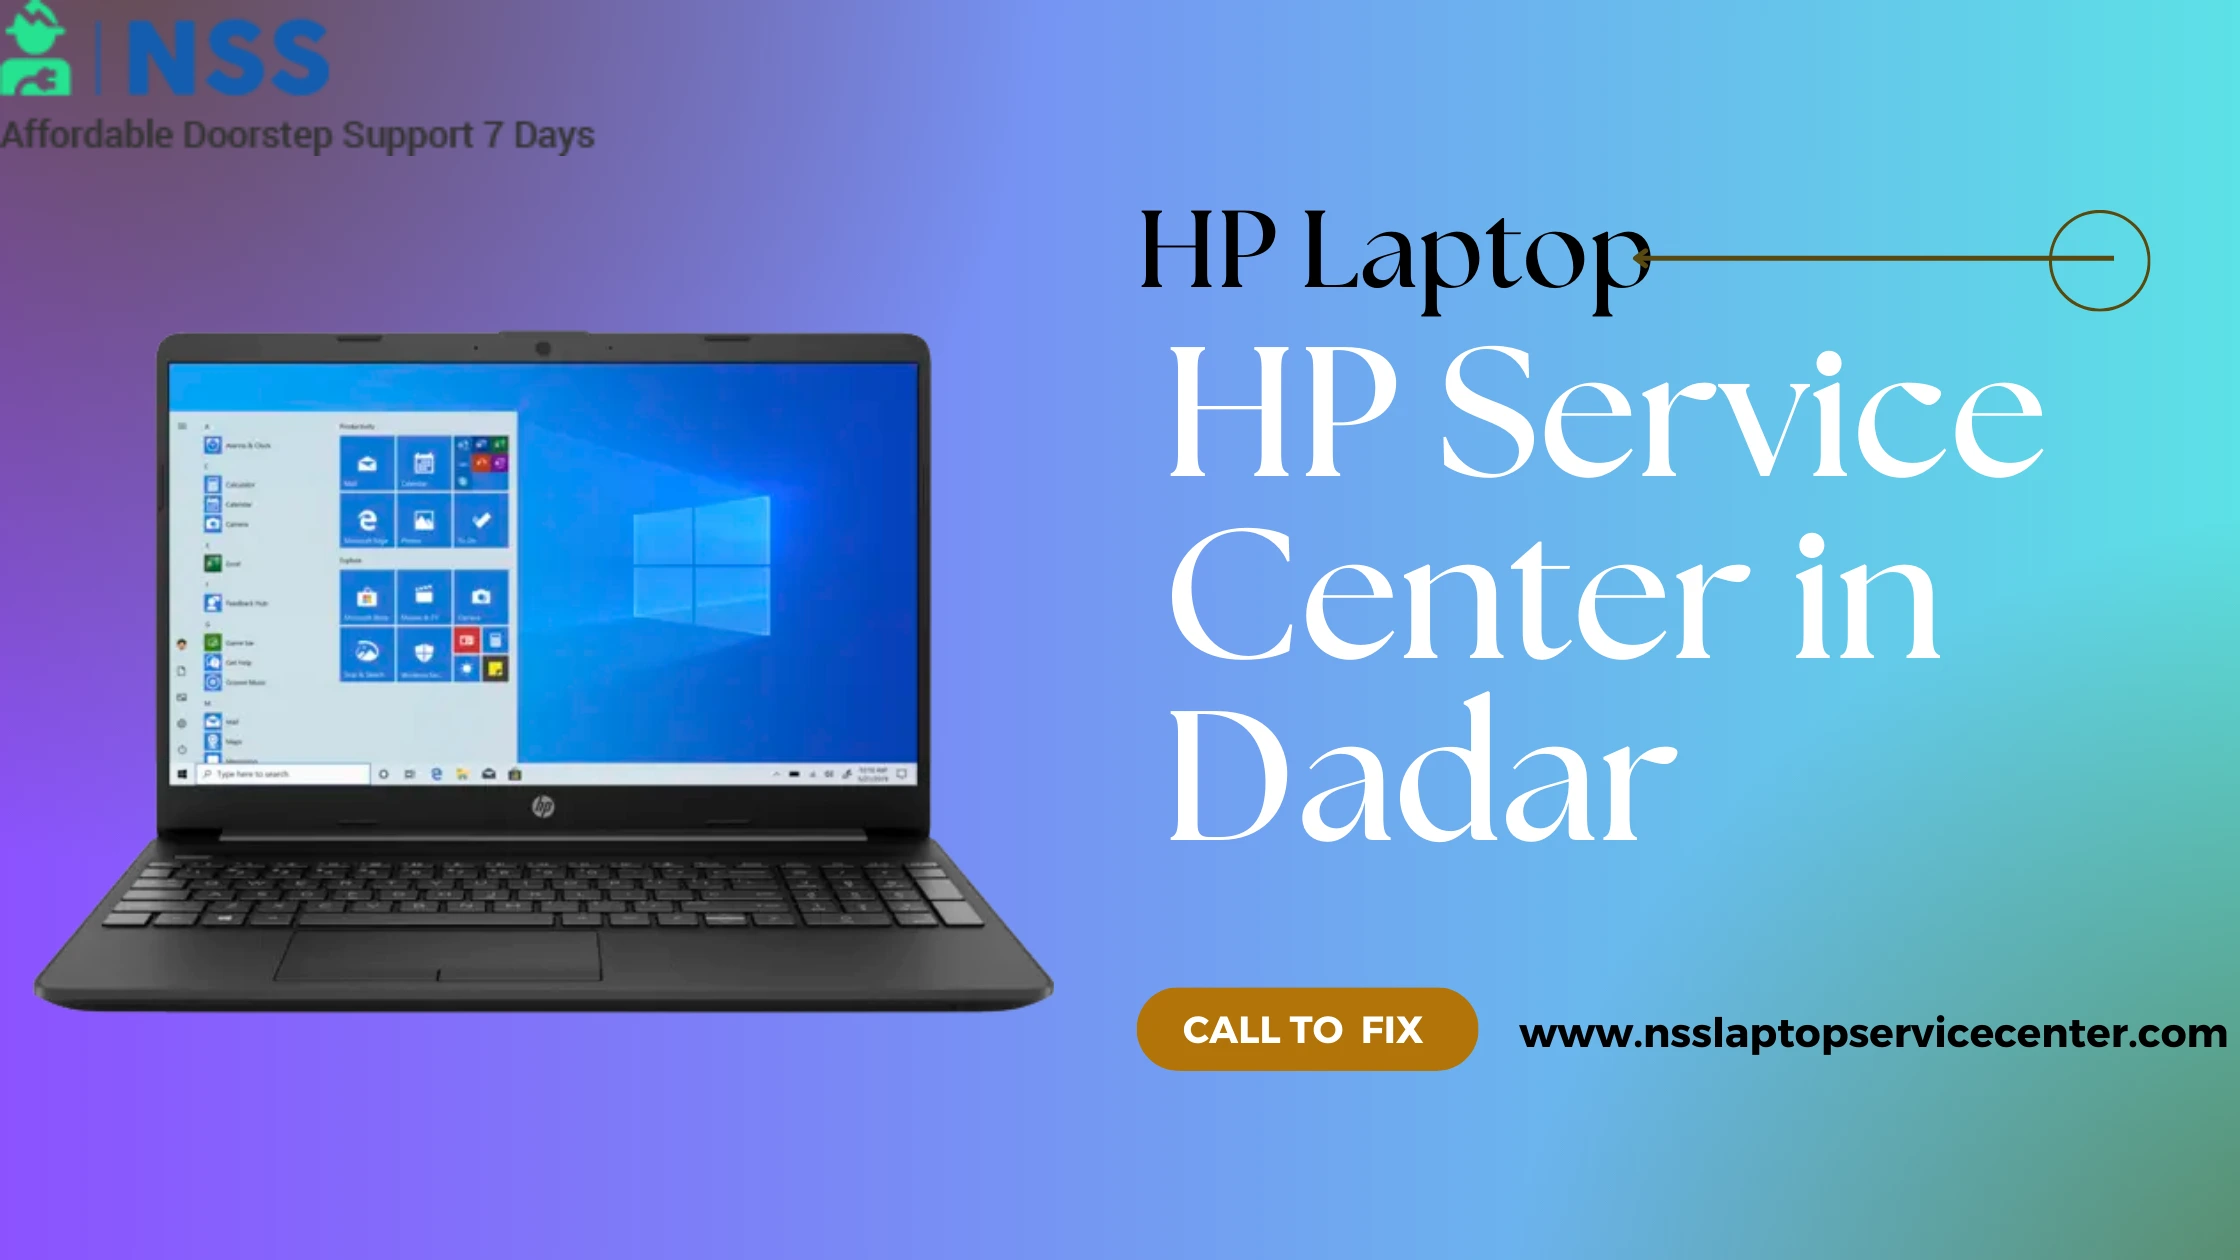 HP Service Center in Dadar Near Mumbai